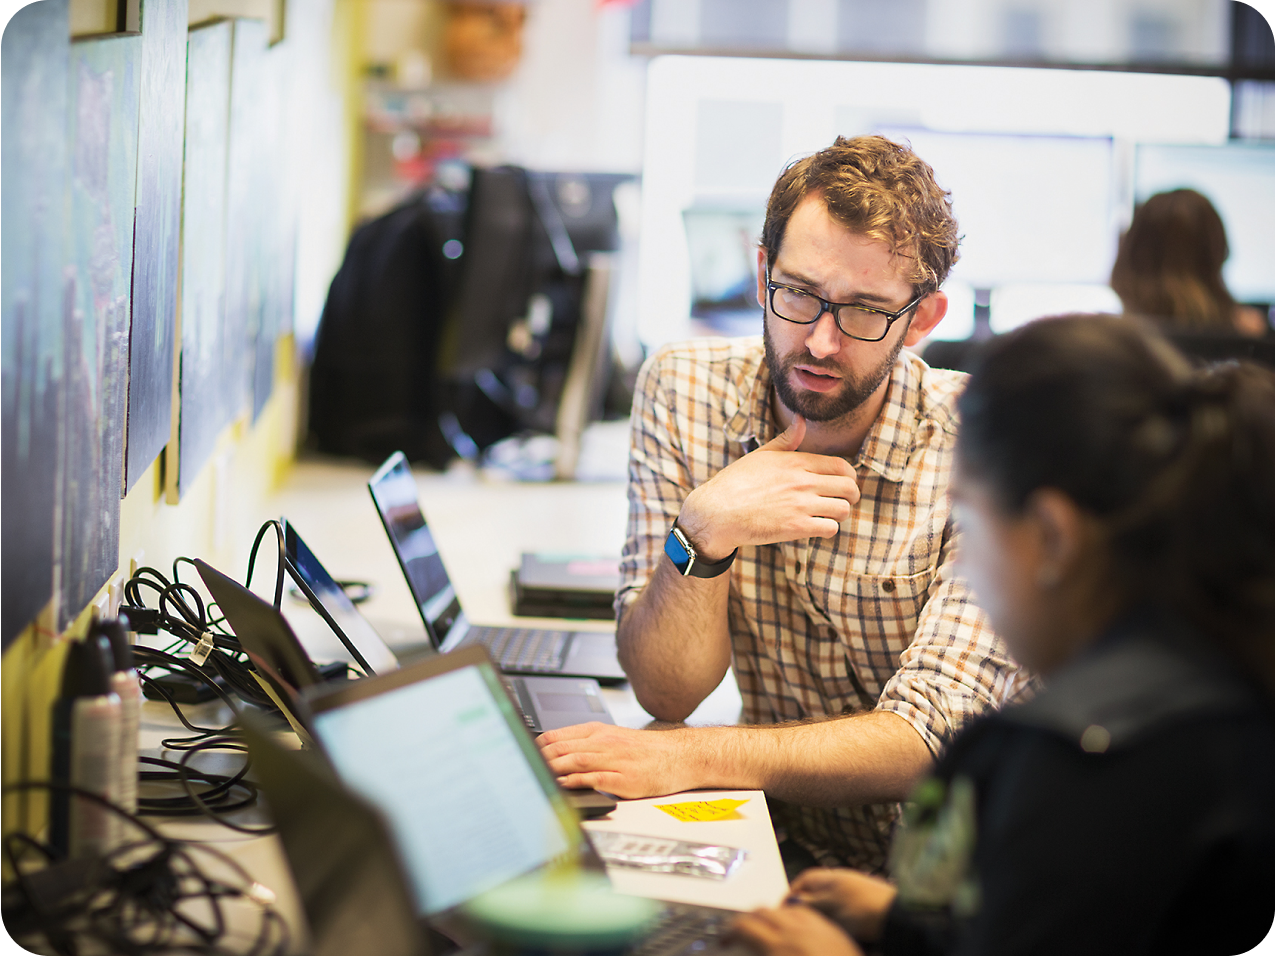 En skjeggete mann med briller gestikulerer mens han diskuterer med en kvinnelig kollega, begge bruker bærbare datamaskiner i et travelt kontormiljø.